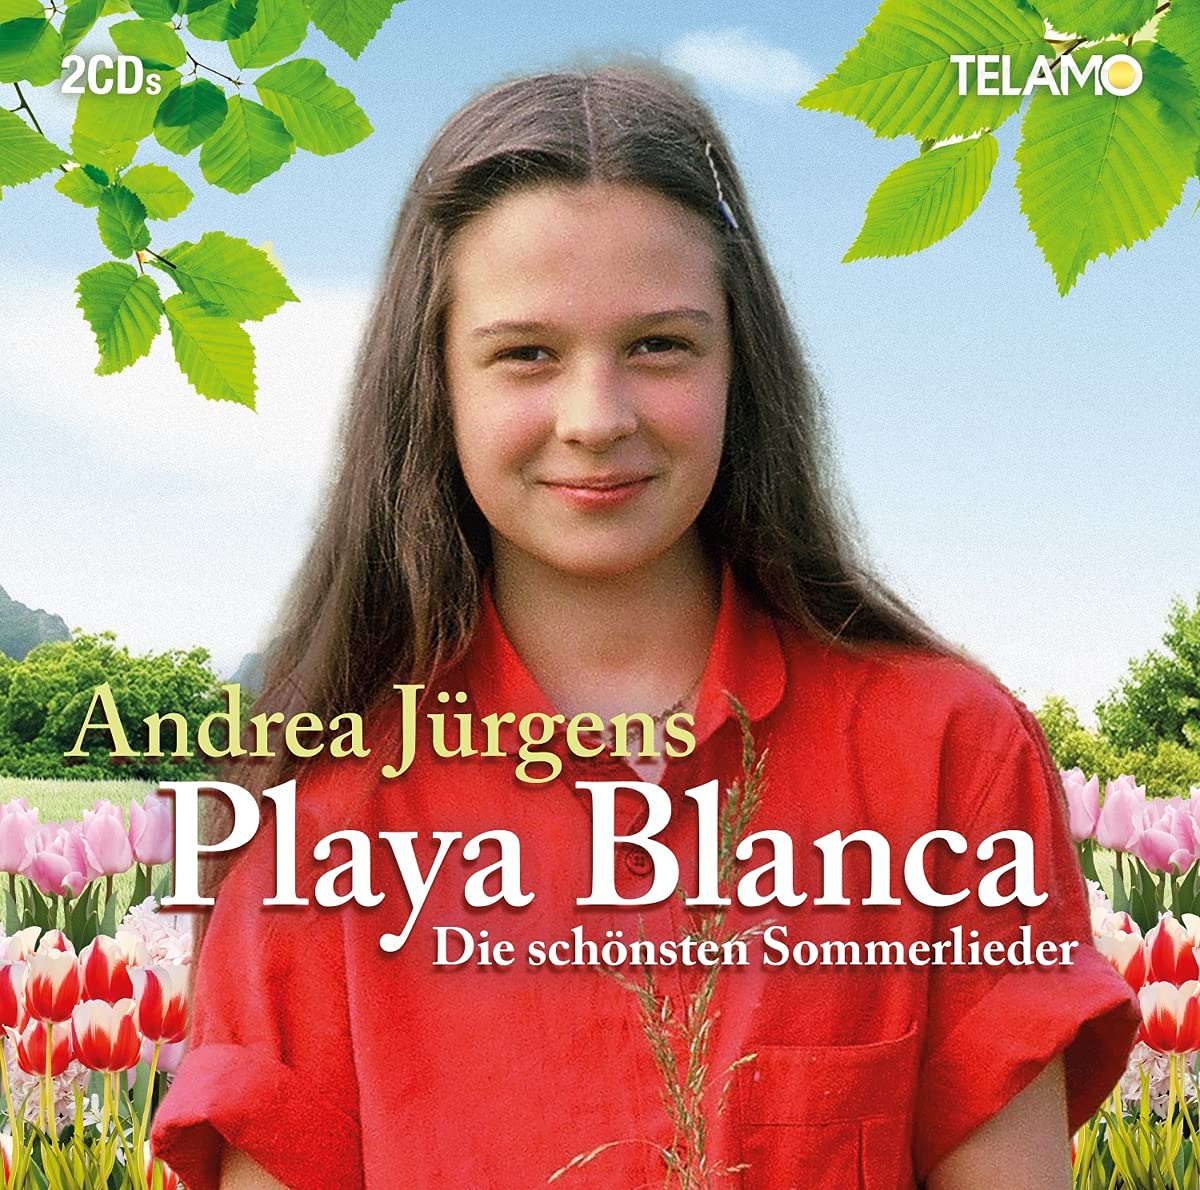 Andrea Jürgens - Playa Blanca (Die schönsten Sommerlieder) (2021)